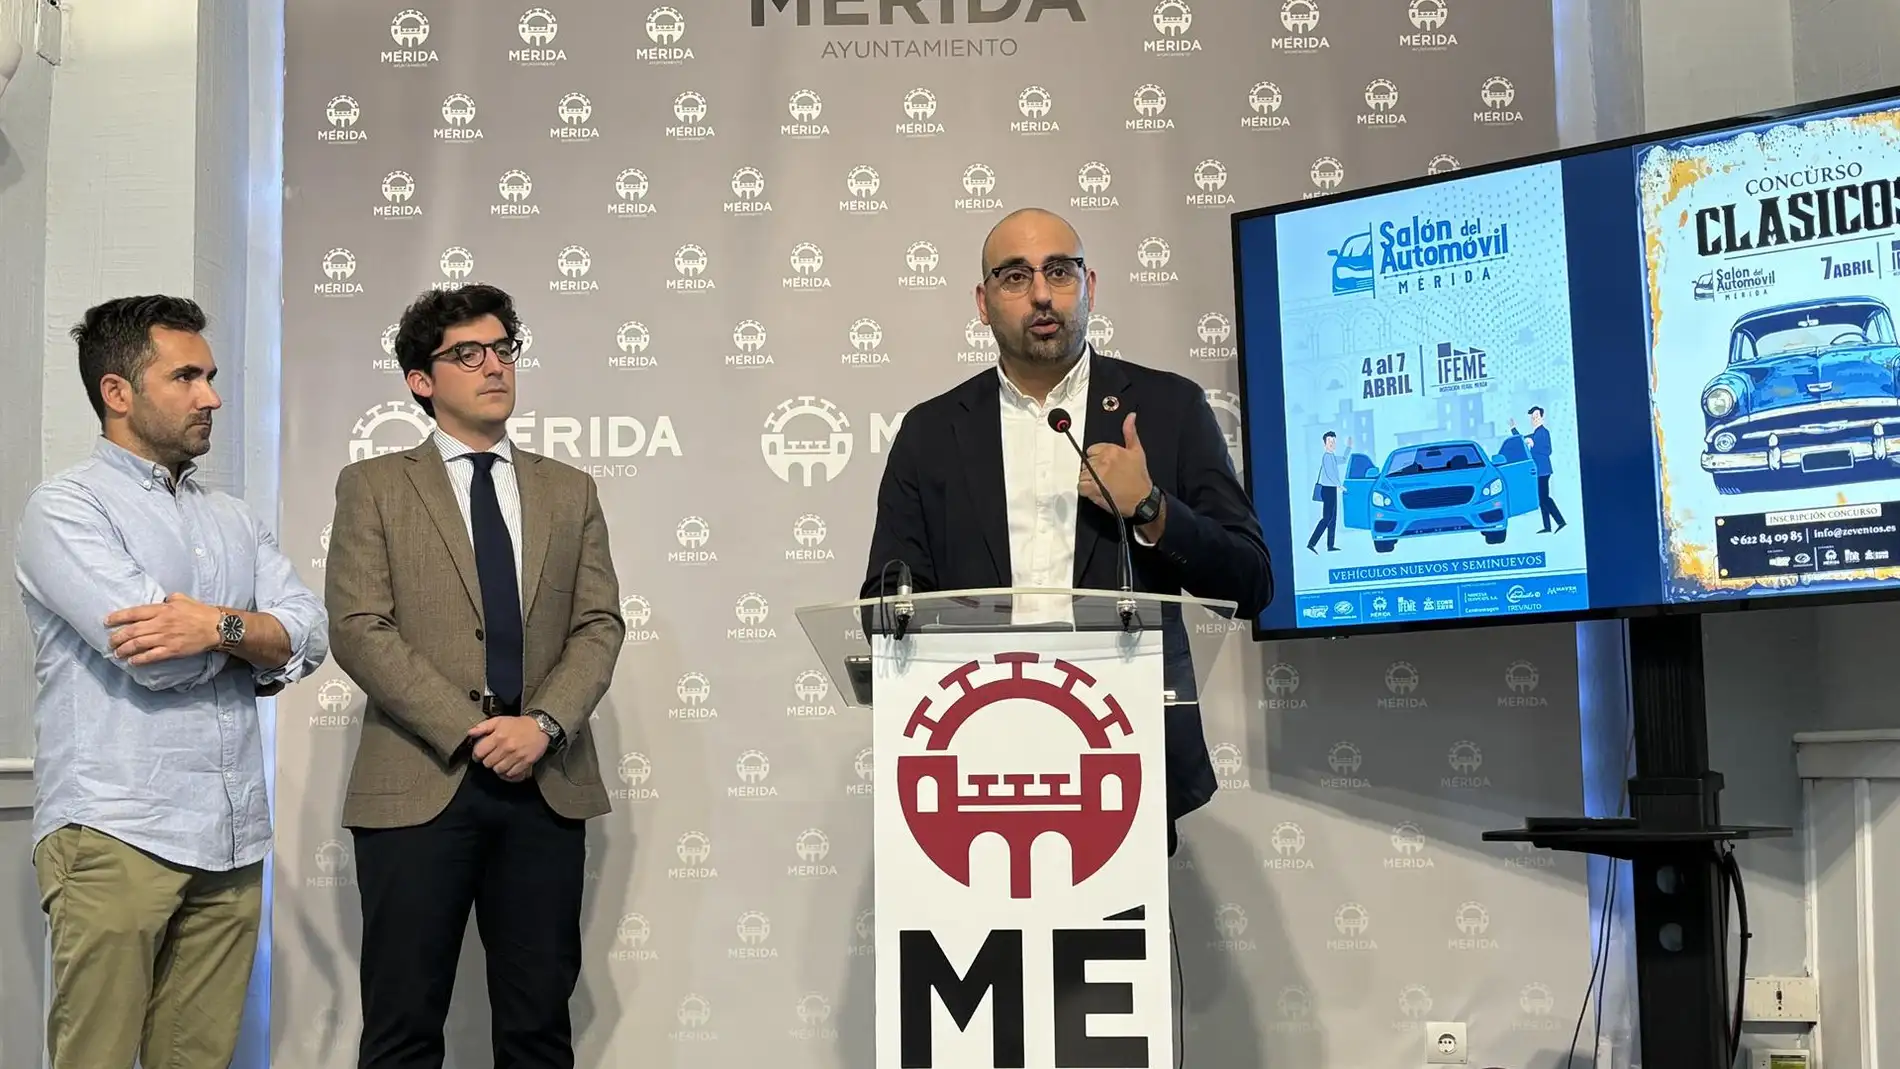 Presentación del Salón del Automóvil de Mérida